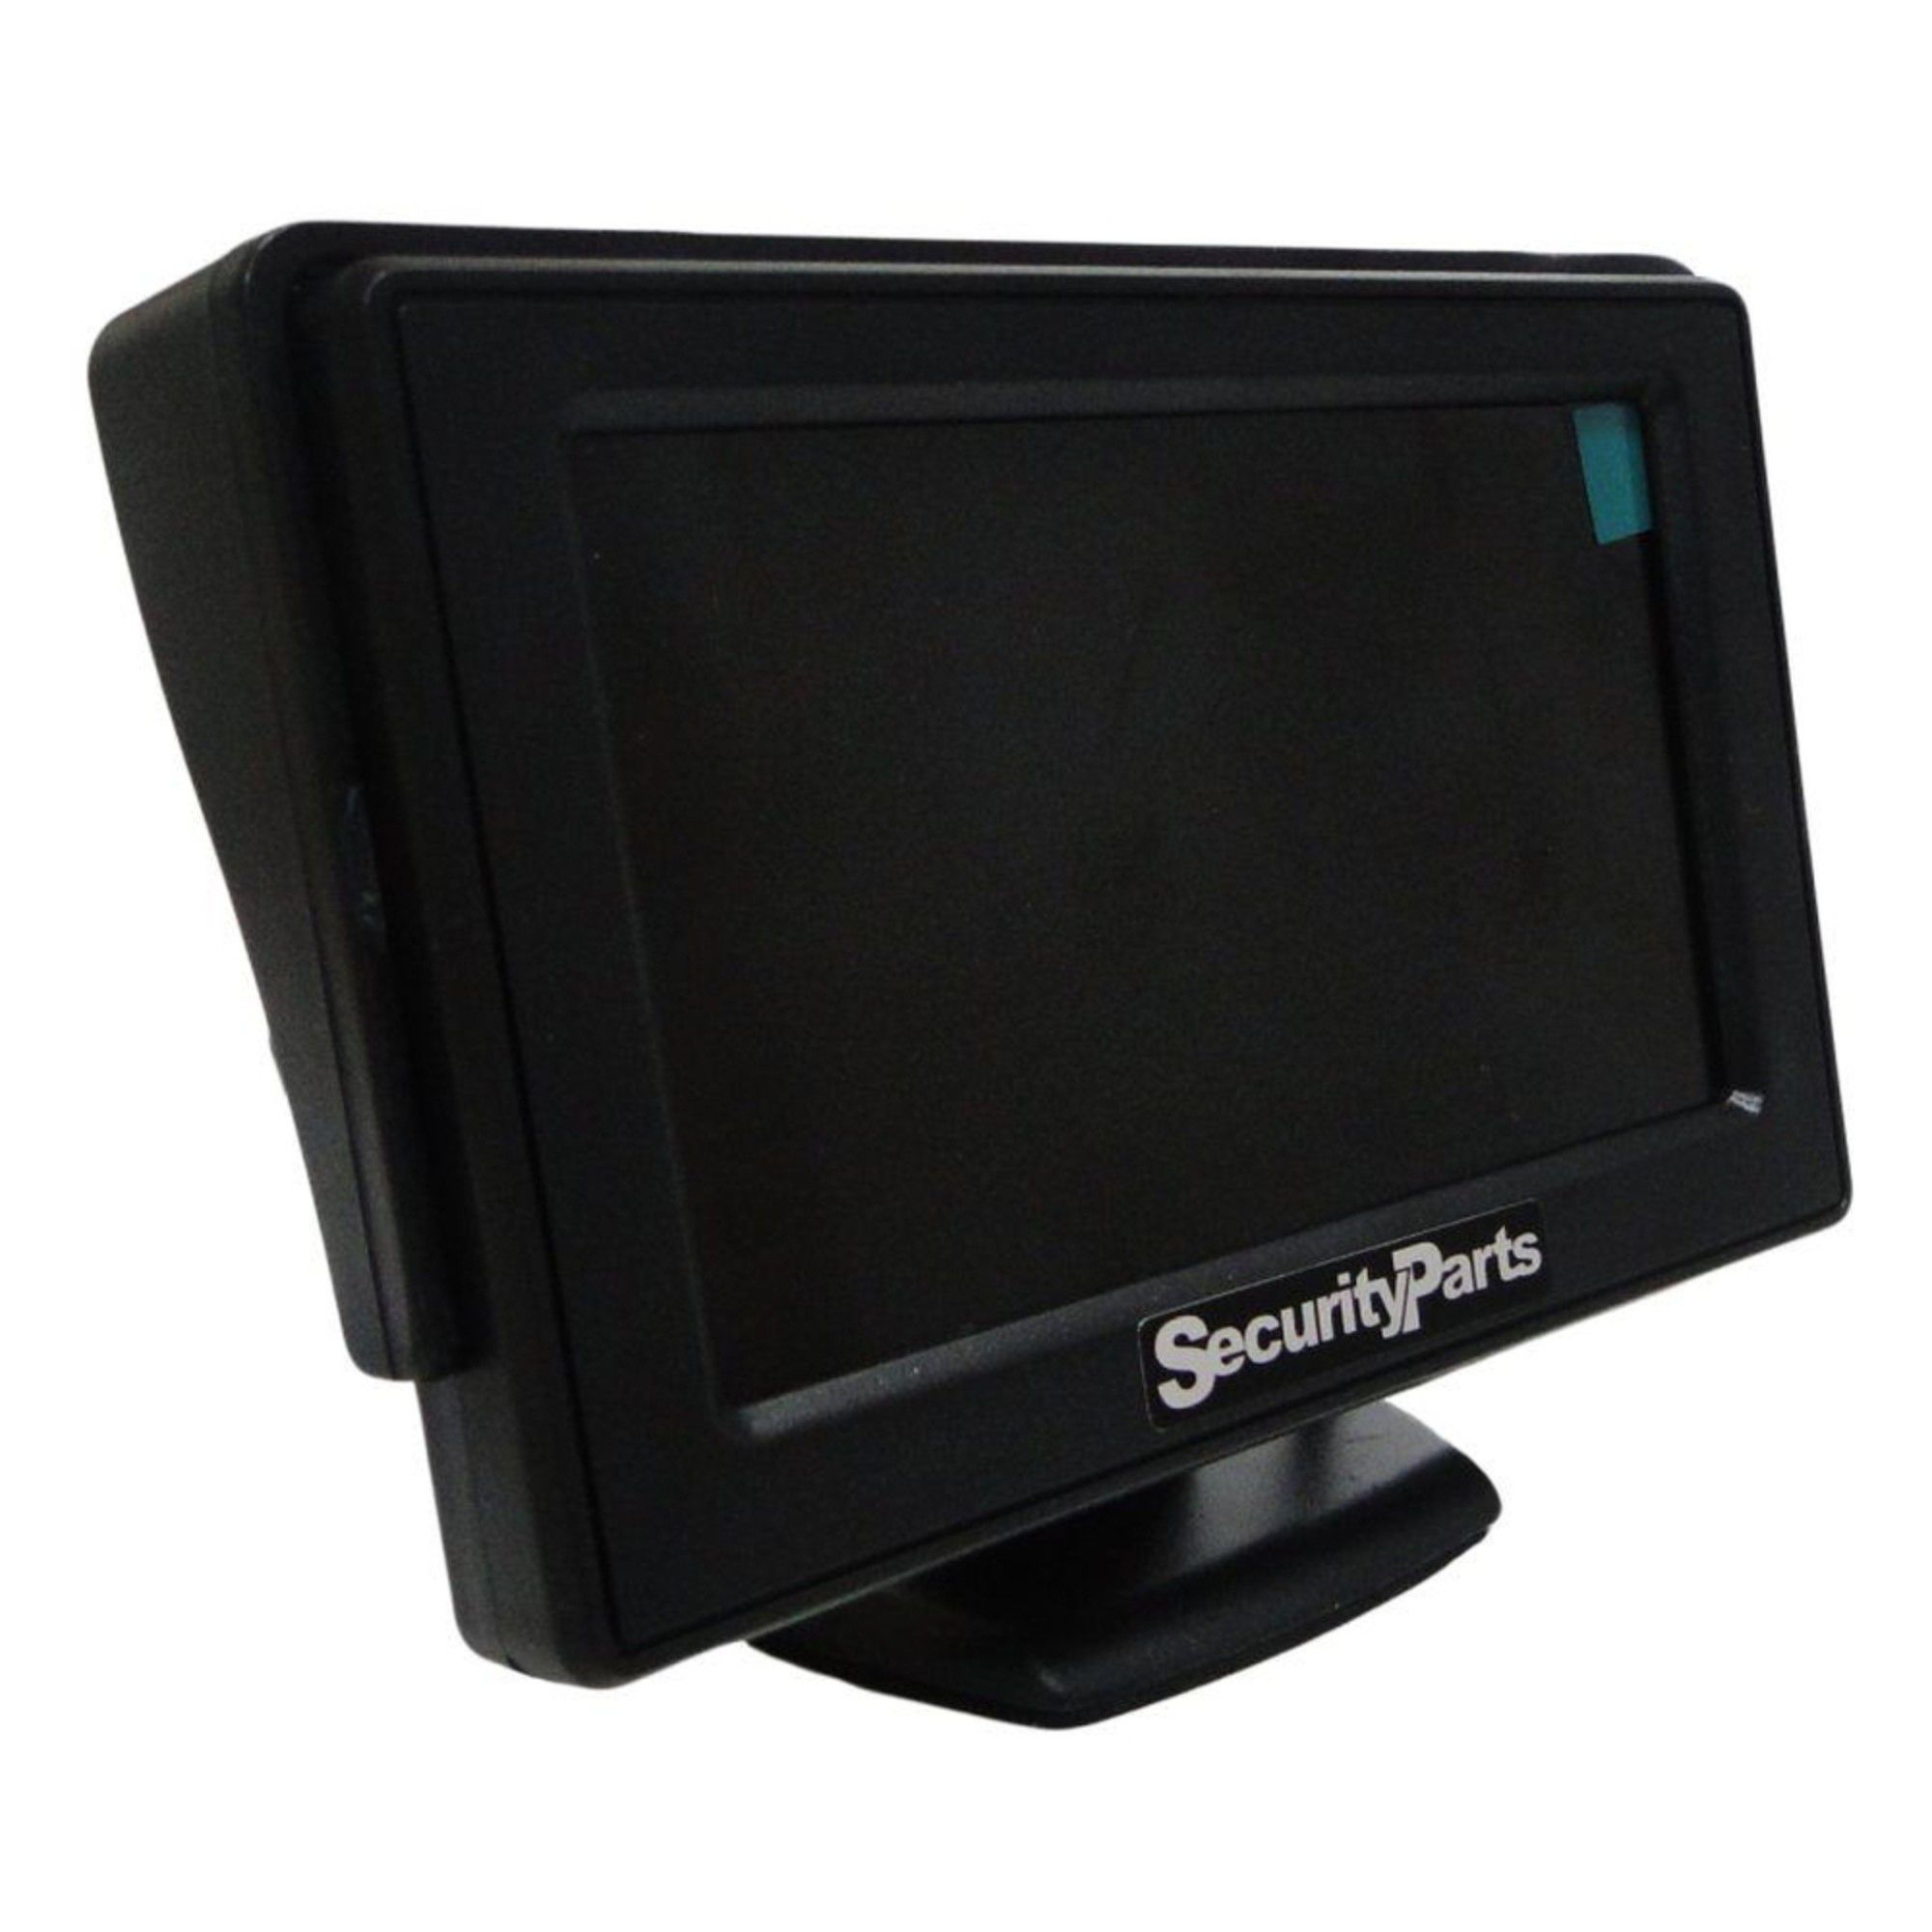 Monitor 4.3" Polegadas LCD Colorido AV RCA